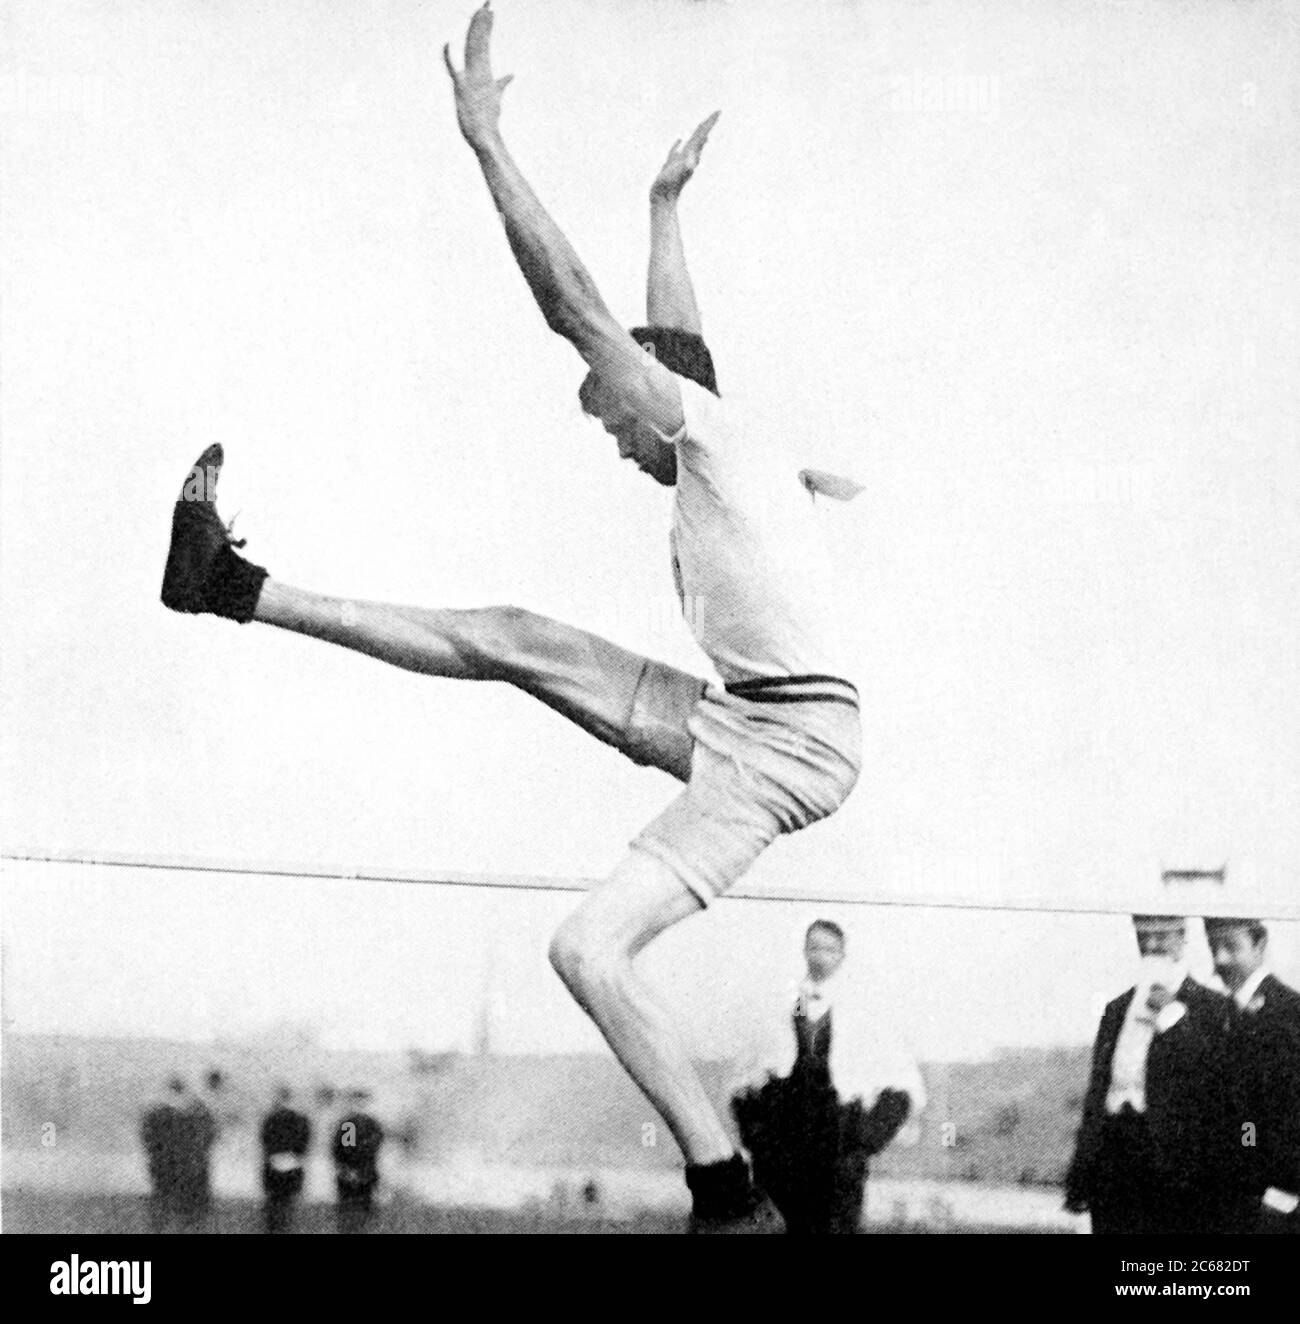 Londra, Inghilterra, Regno Unito. 23 luglio 1908. USA's RAY EWRY alza le braccia mentre si libera la barra per vincere l'oro per il Men's Standing High Jump durante i Giochi Olimpici di Londra 1908. Questa è la decima medaglia d'oro olimpica di Ewry in tutto. Credit: EMPICS/PA Wire/ZUMAPRESS.com/Alamy Live News Foto Stock